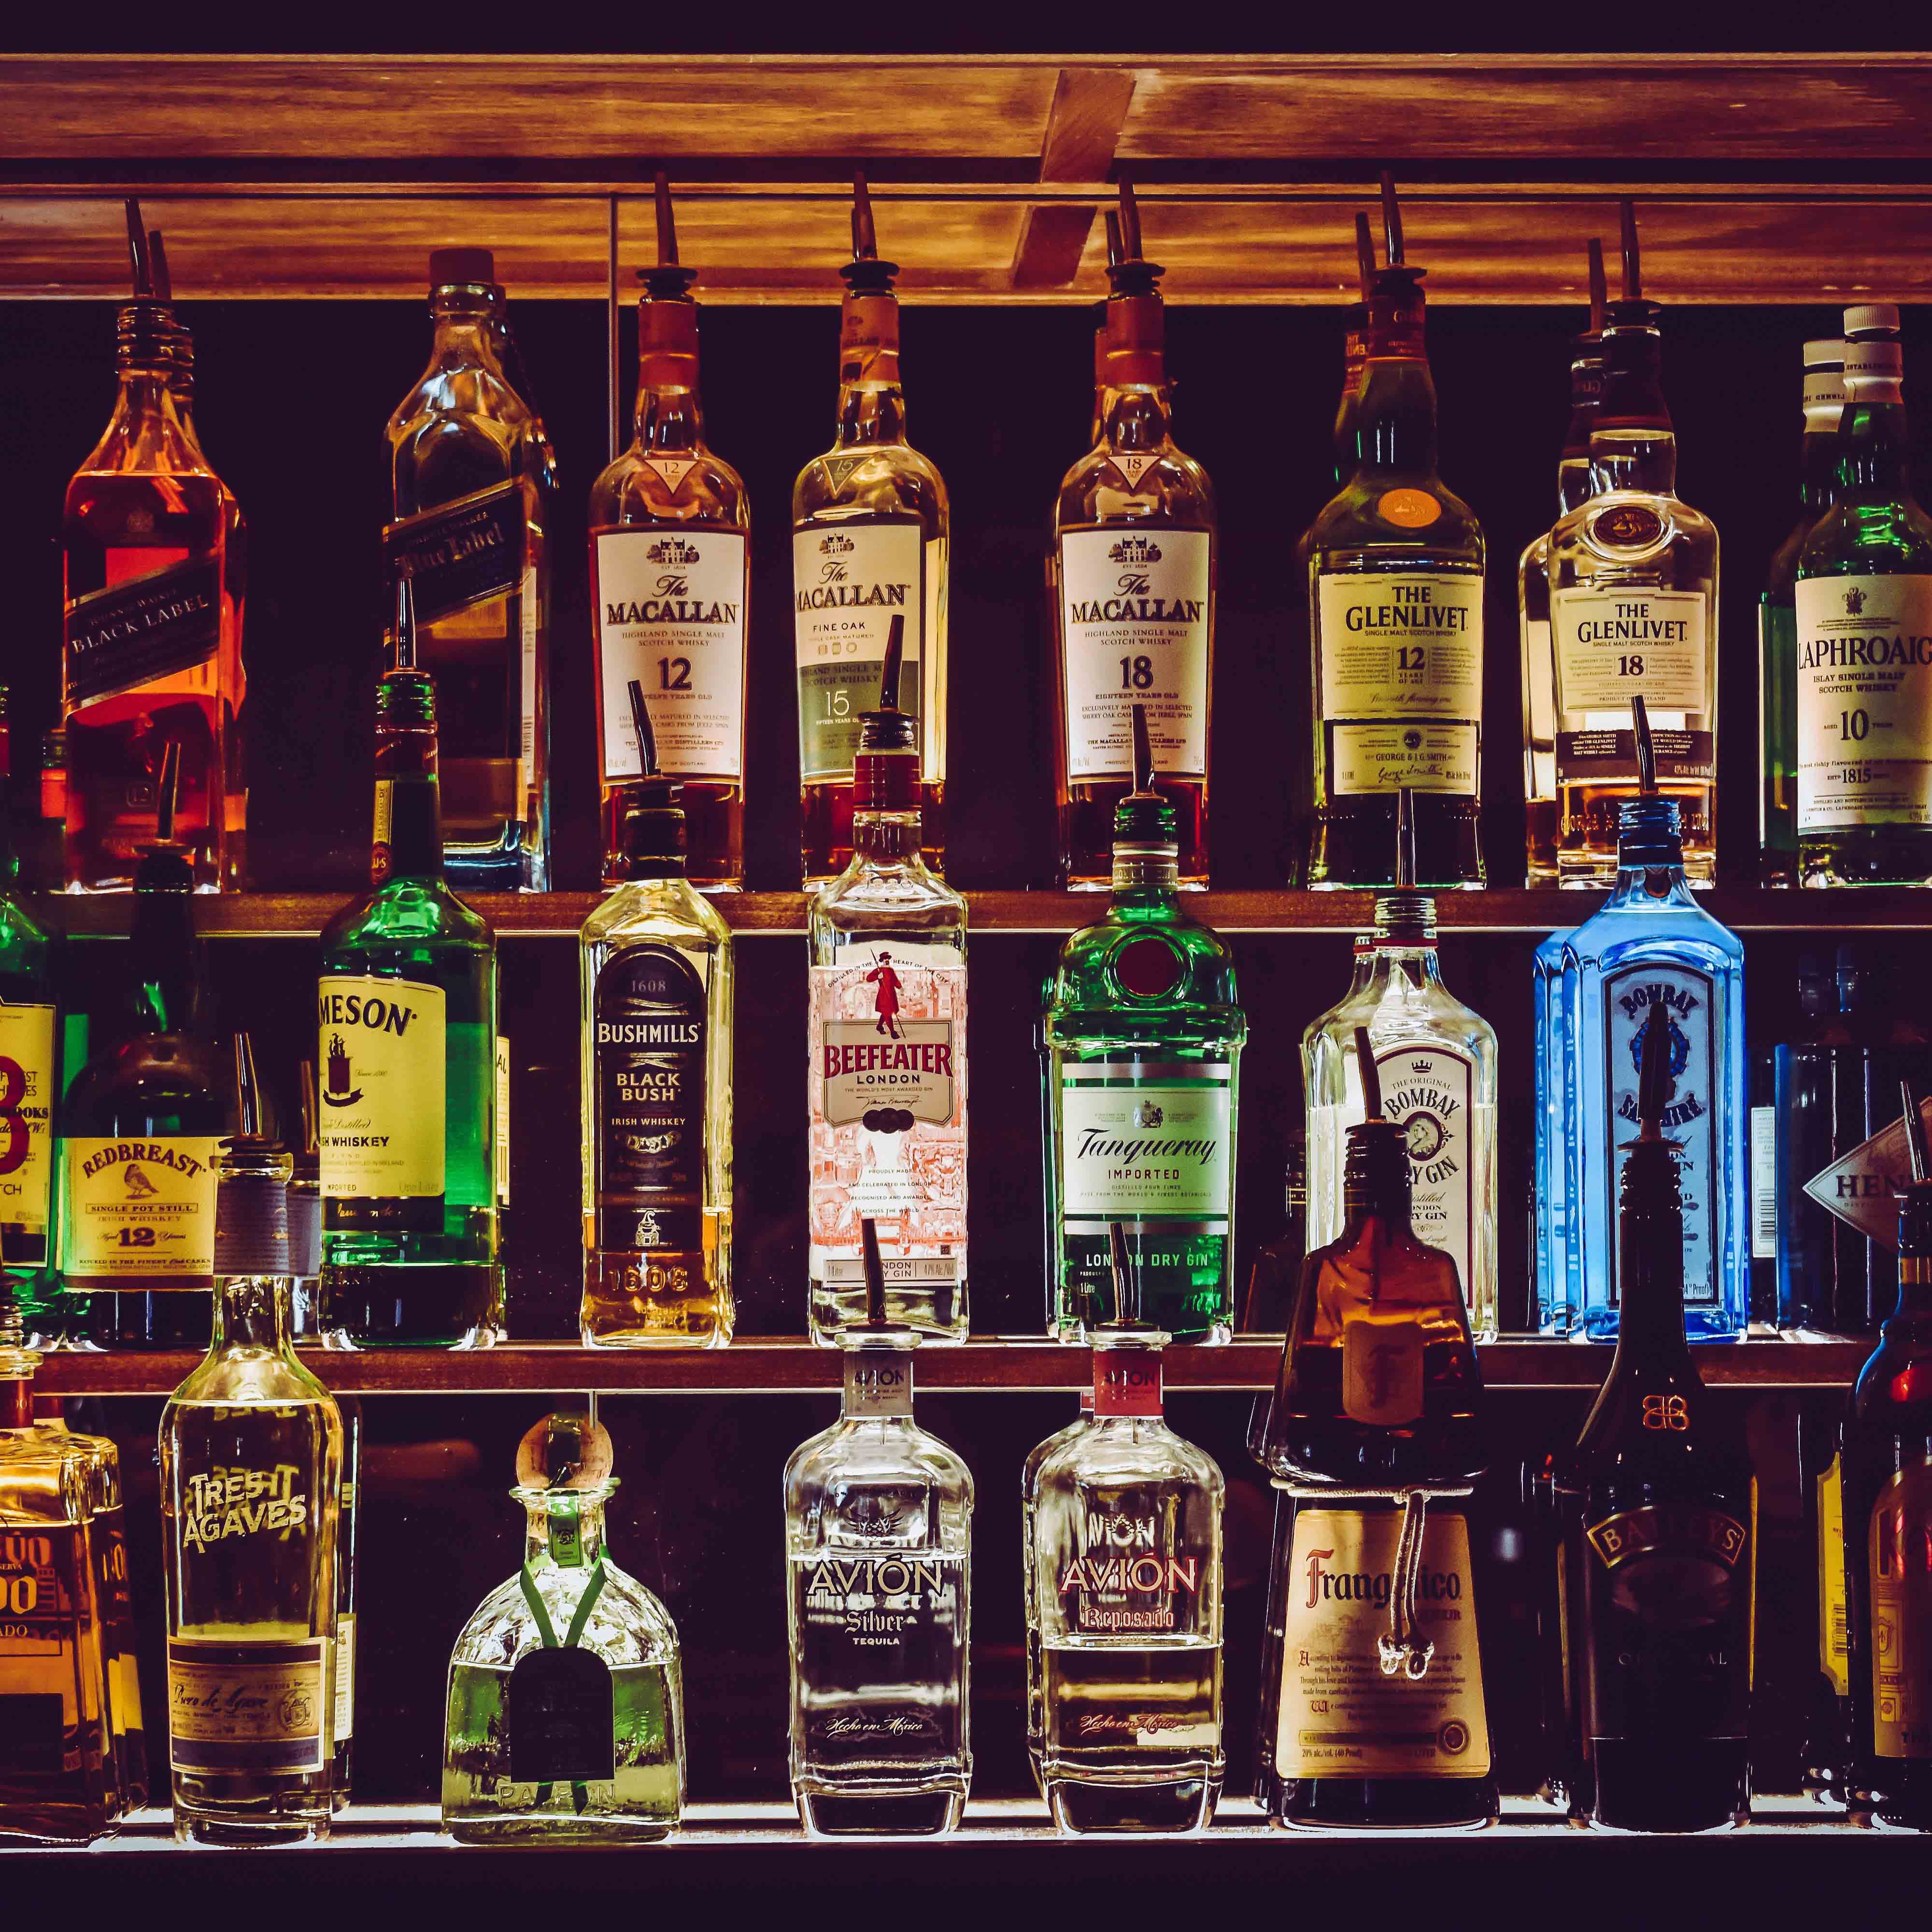 Bottle,Alcohol,Liqueur,Drink,Glass bottle,Distilled beverage,Alcoholic beverage,Liquor store,Bar,Blended whiskey